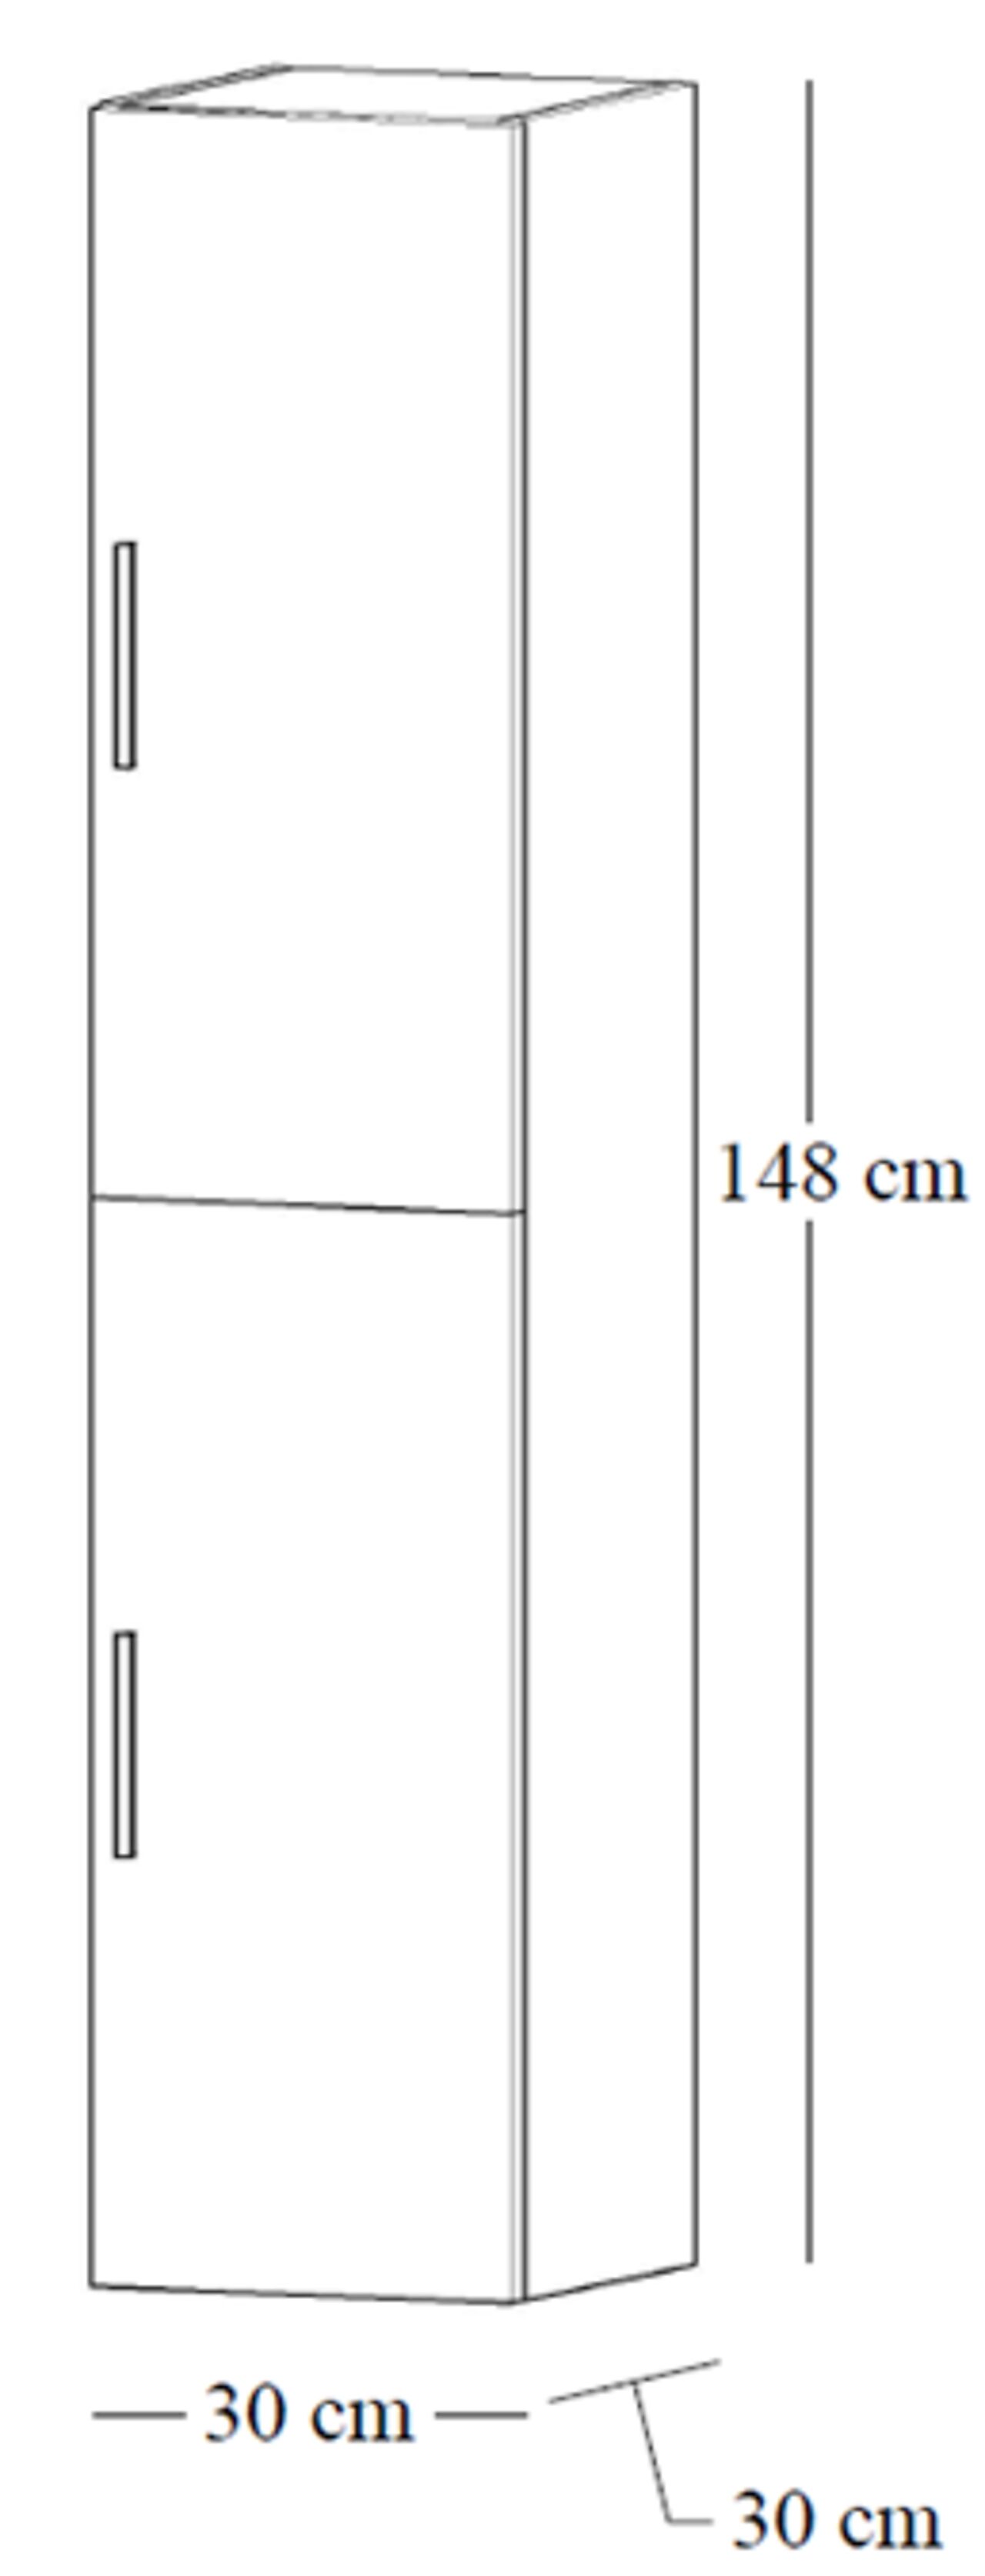 Alterna Alterna Malin 30 cm høyskap med 2 dører grå matt 1